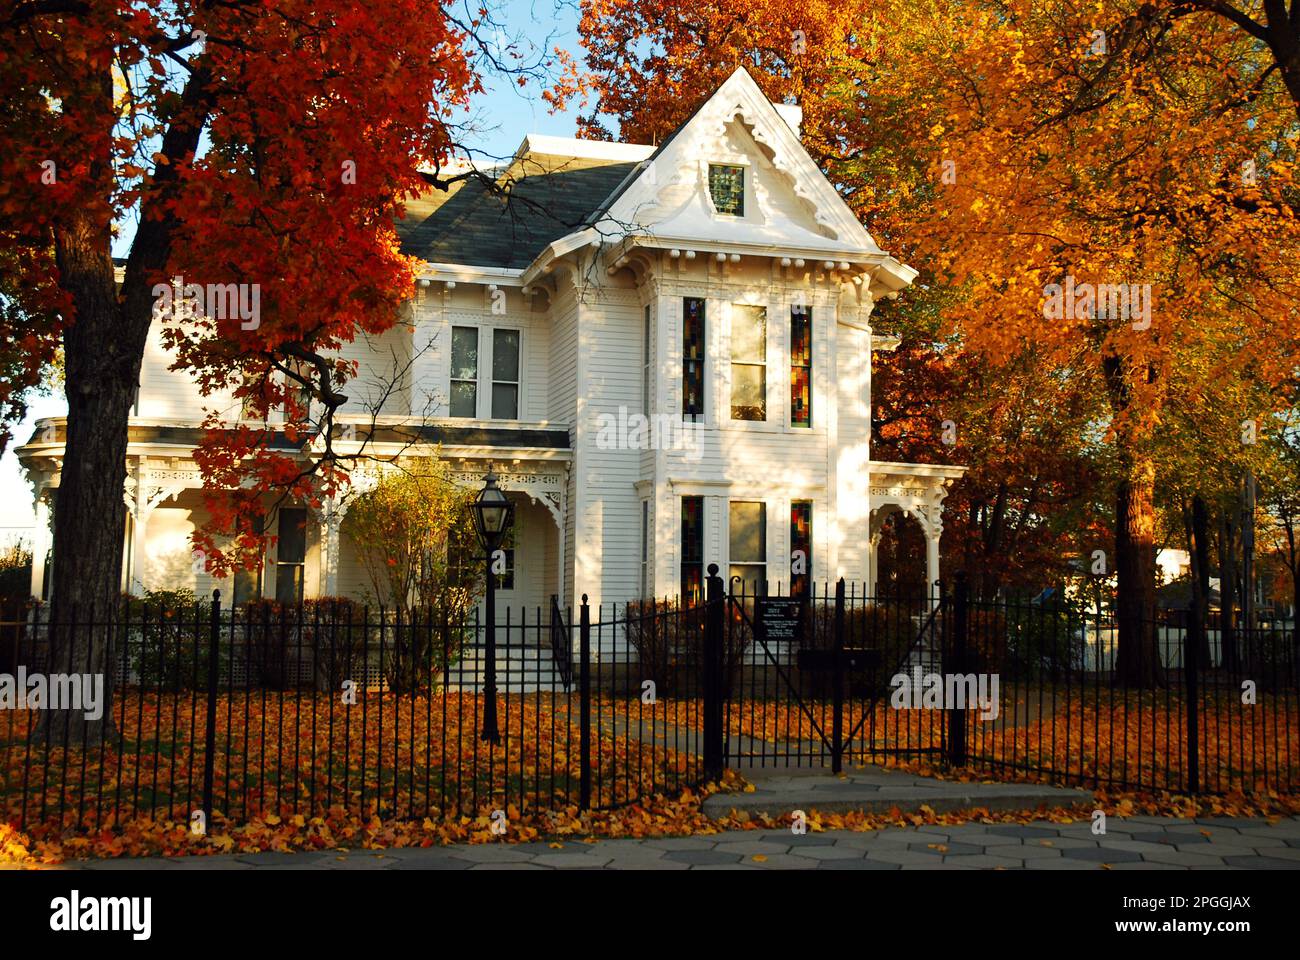 Les feuillages d'automne et d'automne encadrent la maison victorienne, qui abritait autrefois le président Harry S Truman à Independence, Missouri Banque D'Images